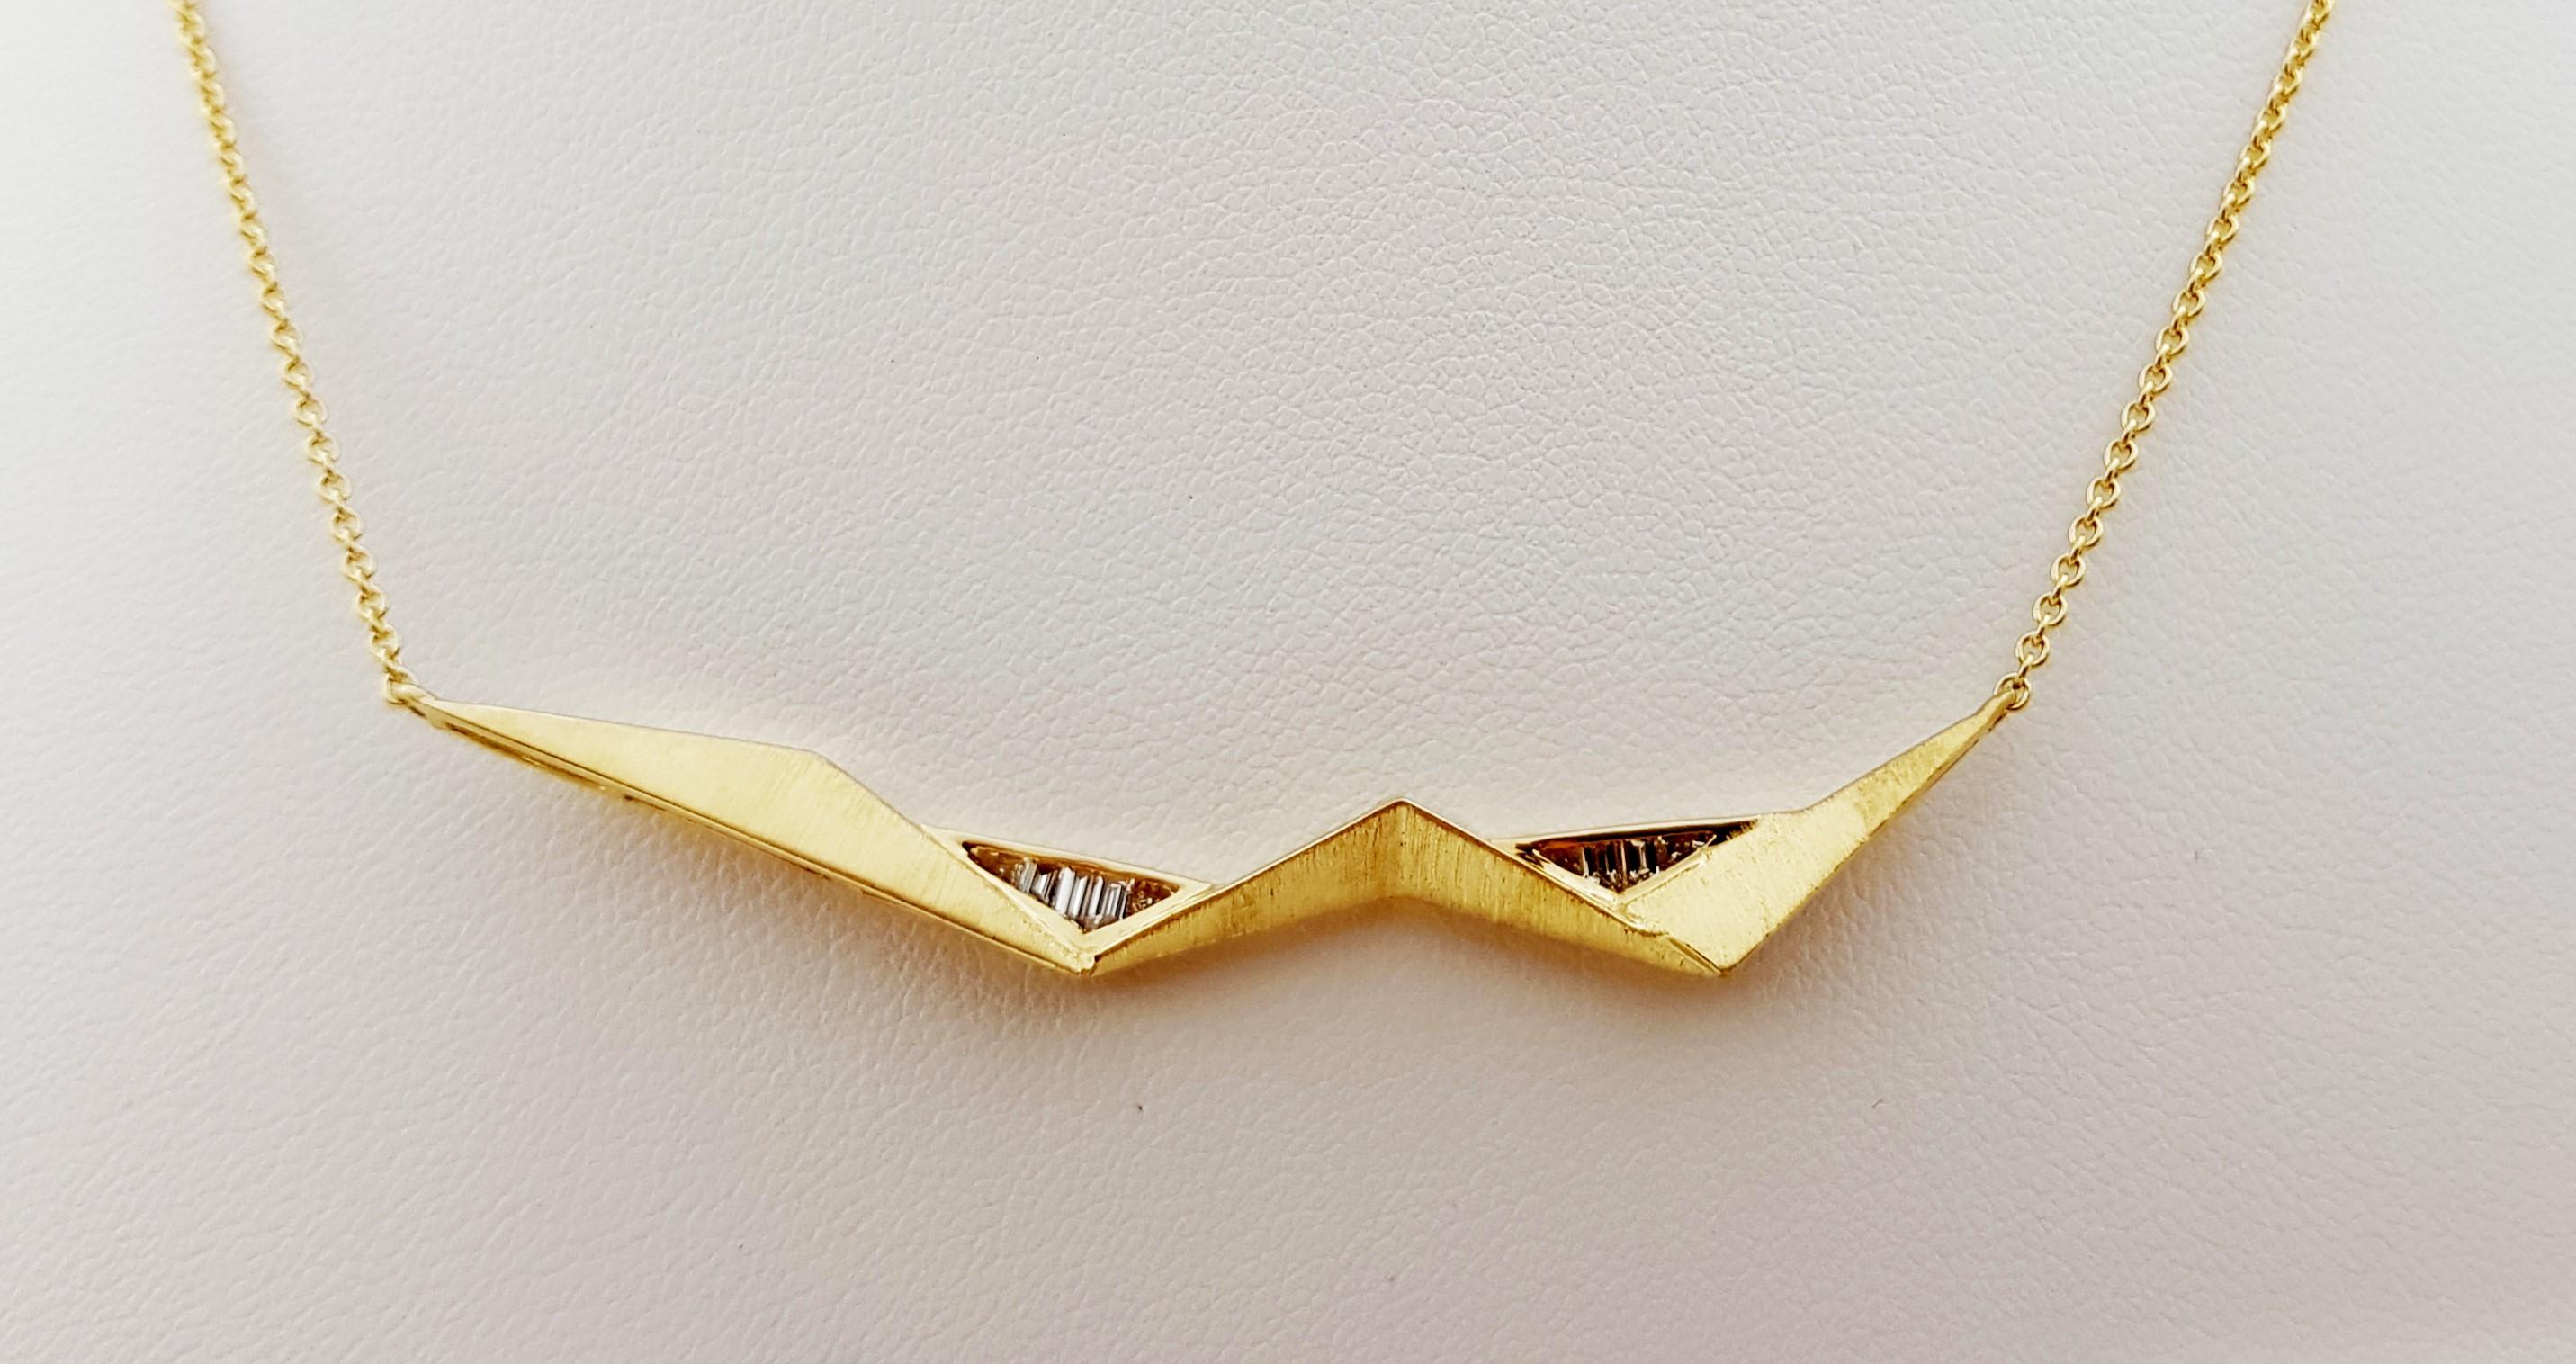 Diamant-Halskette mit 0,38 Karat in 18 Karat Goldfassung von Kavant & Sharart

Breite: 1,3 cm 
Länge: 46,0 cm
Gesamtgewicht: 6,50 Gramm

